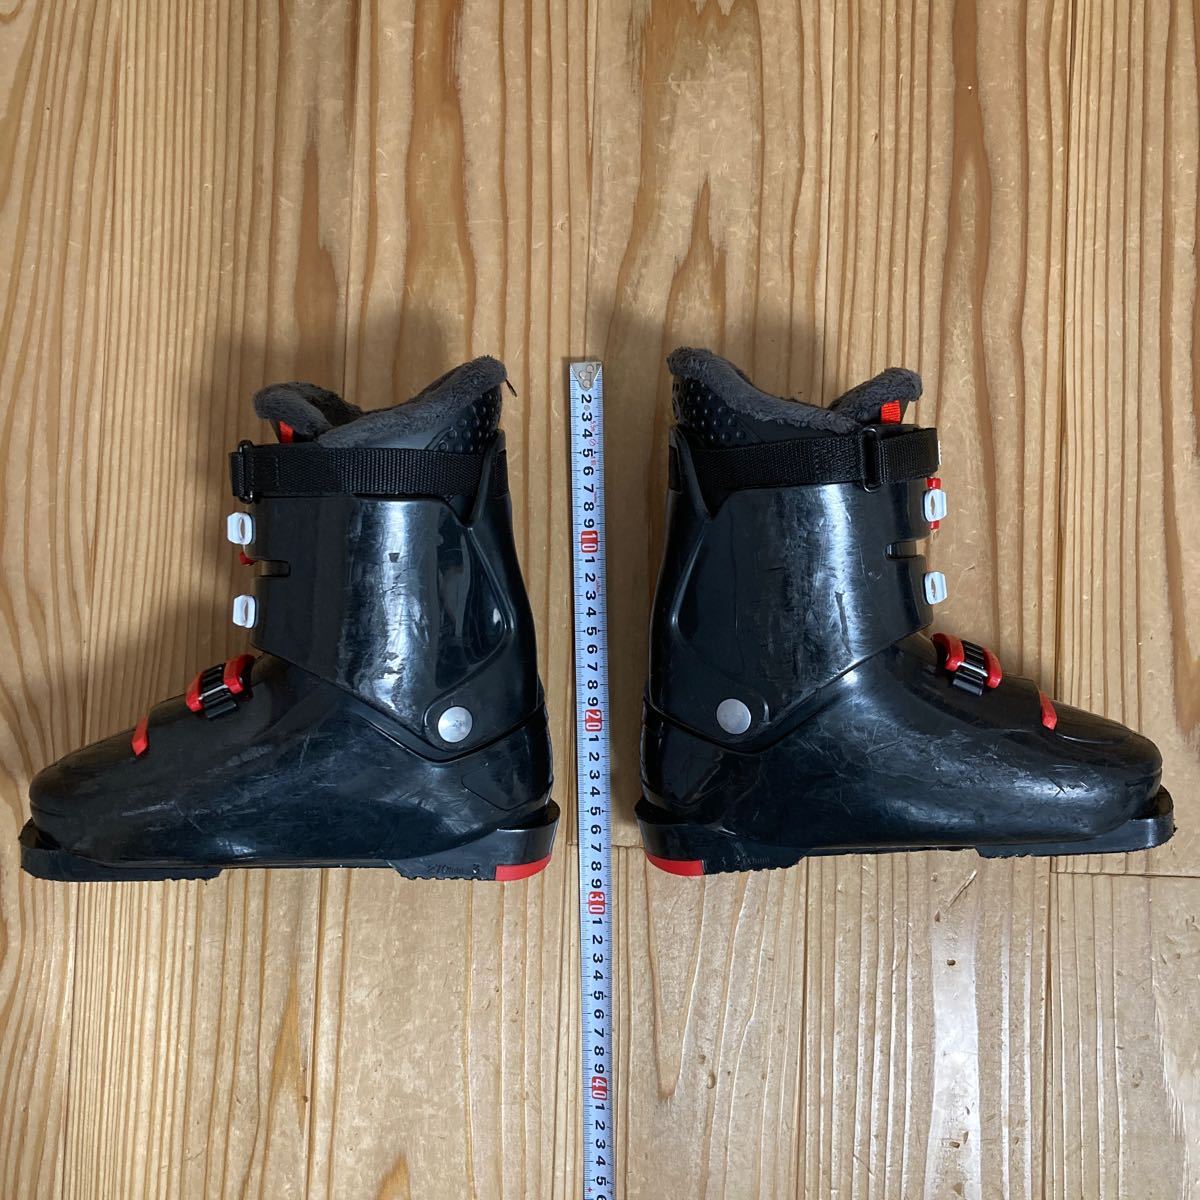  лыжи ботинки Junior 23.0